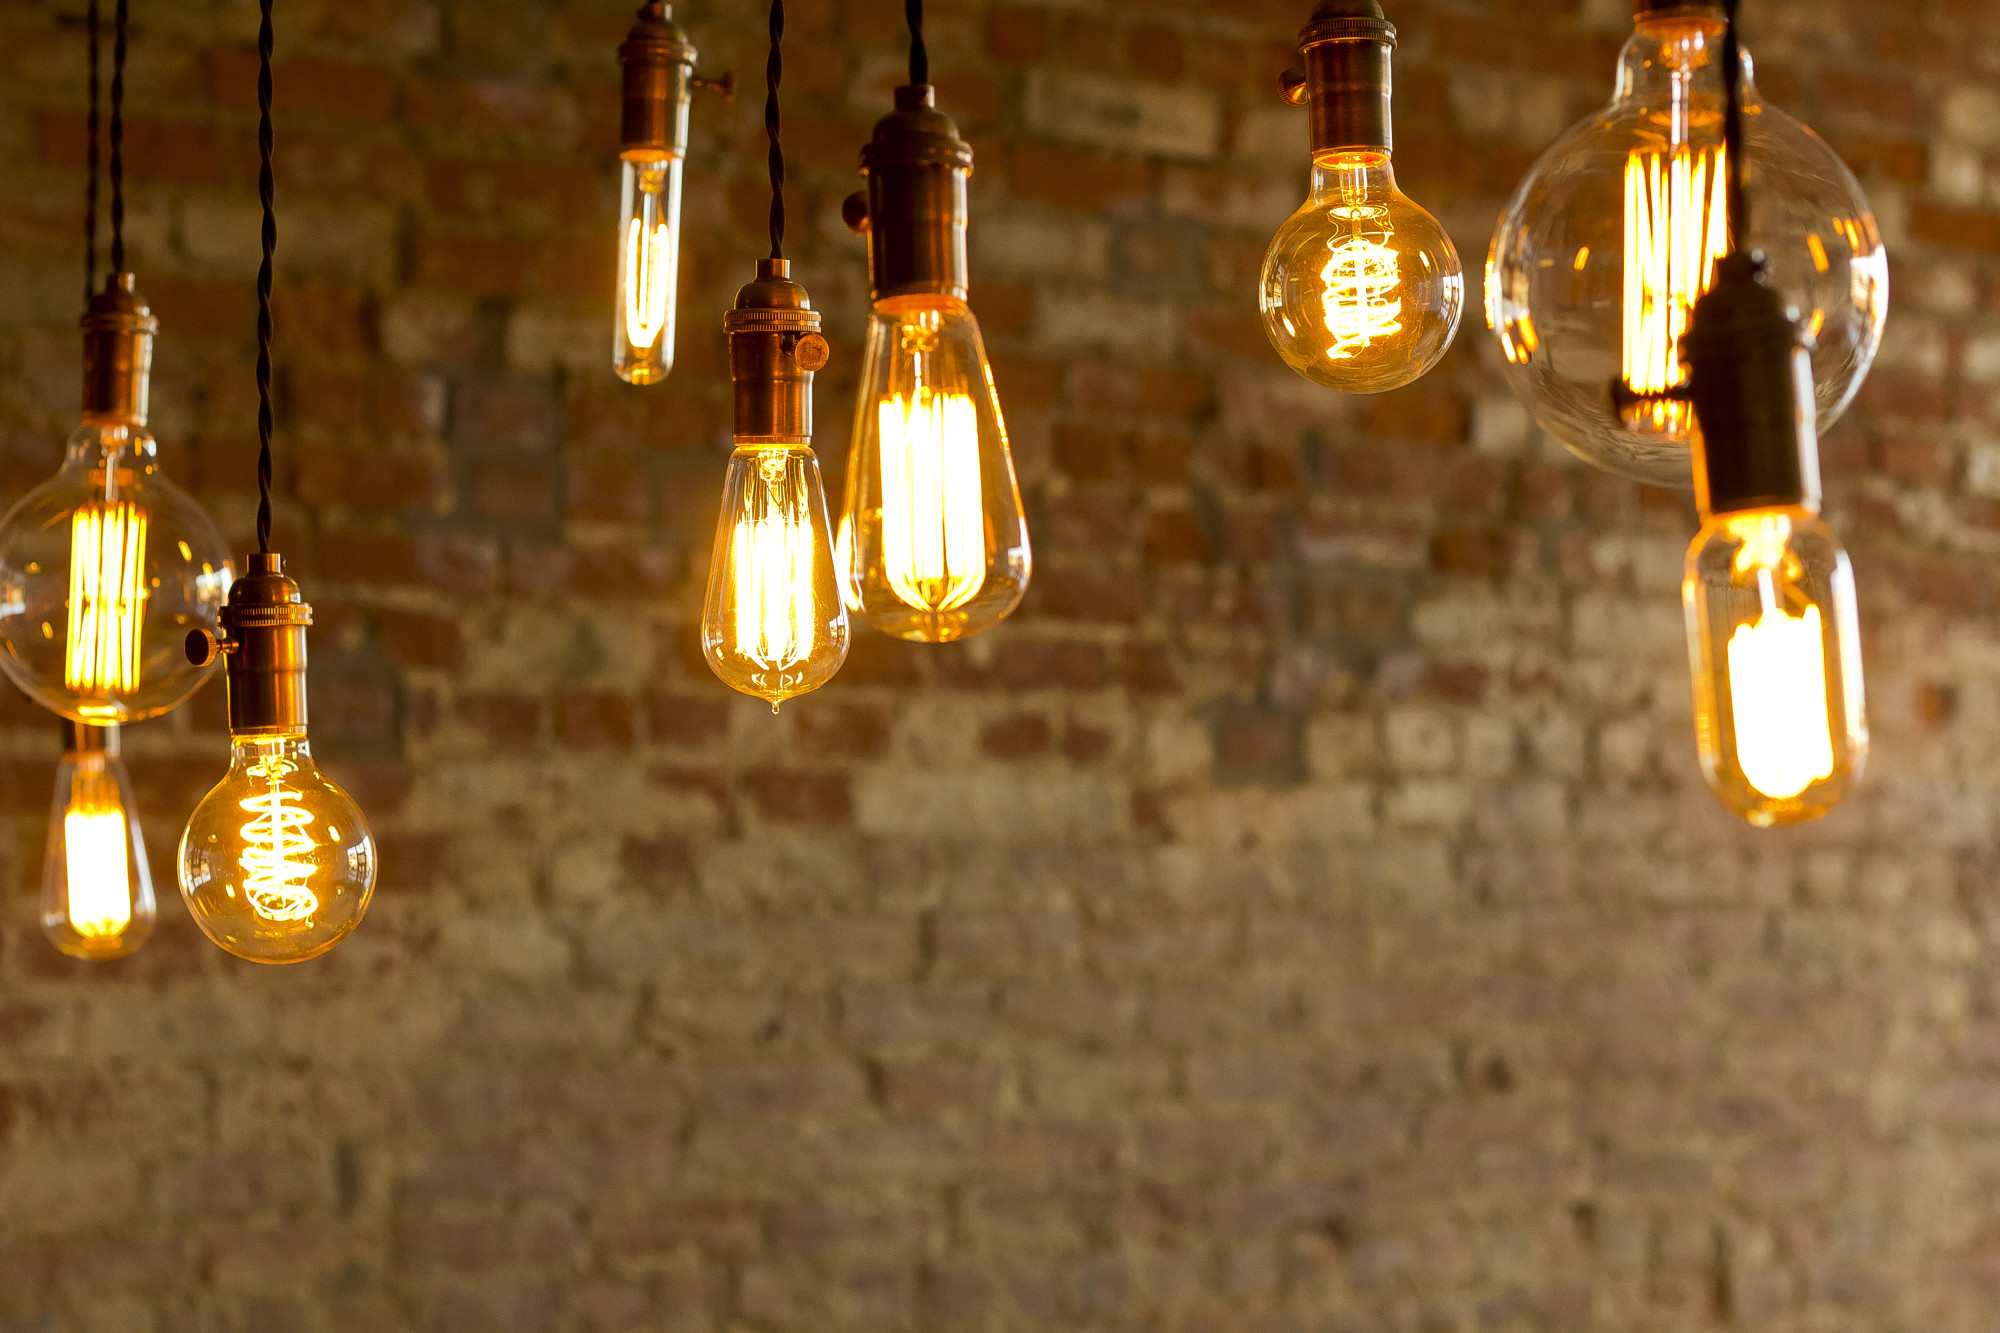 5 Benefits of Hiring Professionals to Install Indoor Decorative Lighting